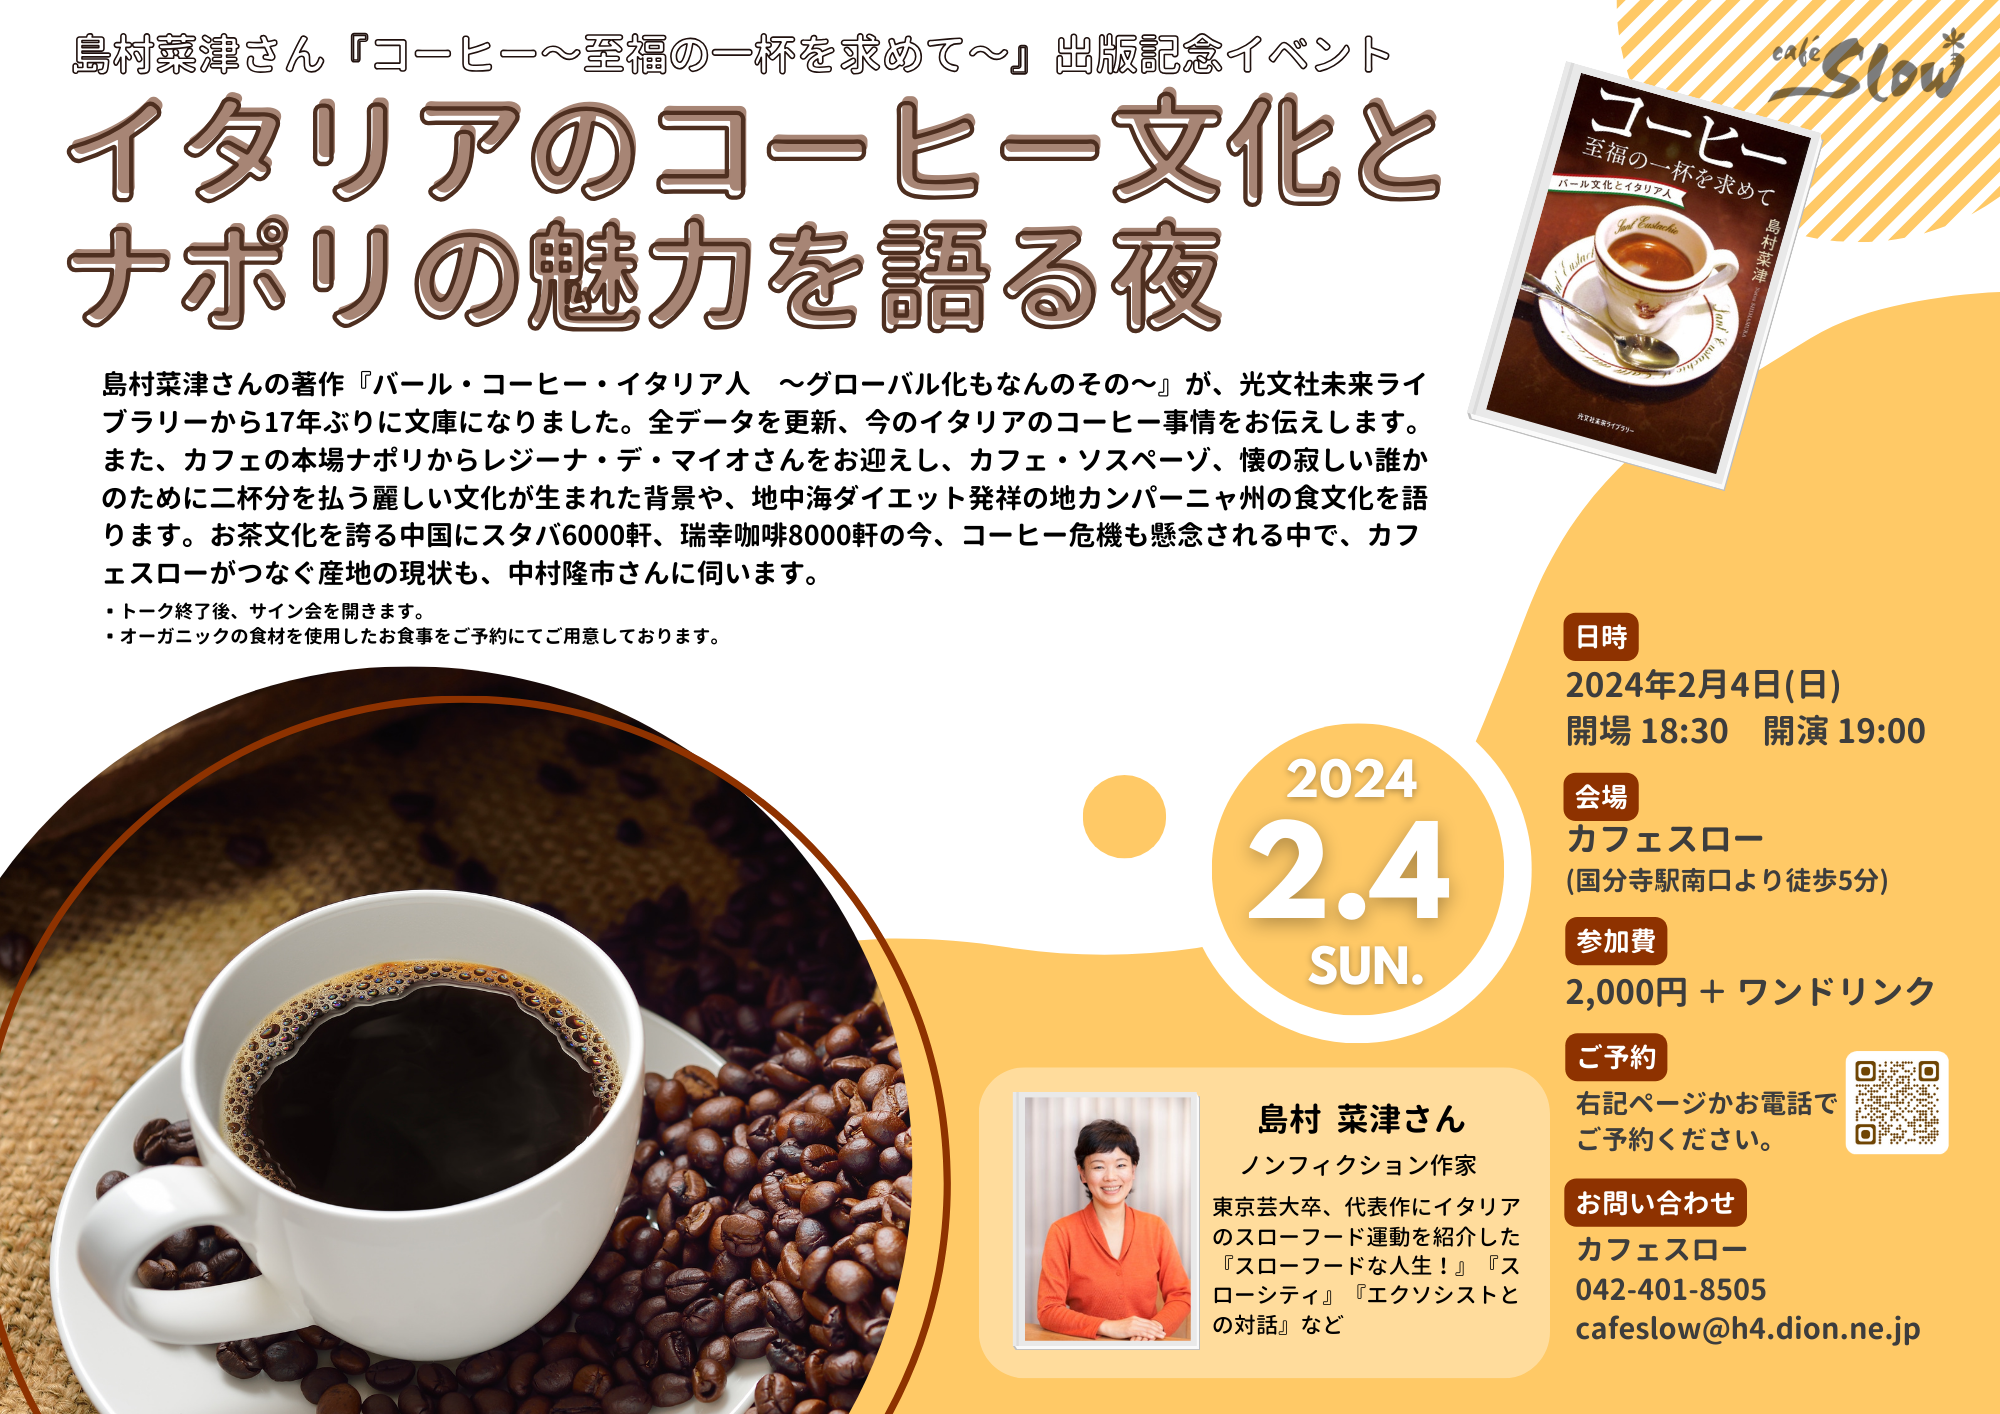 2/4(日) イタリアのコーヒー文化と ナポリの魅力を語る夜 島村菜津さん出版記念トークイベント